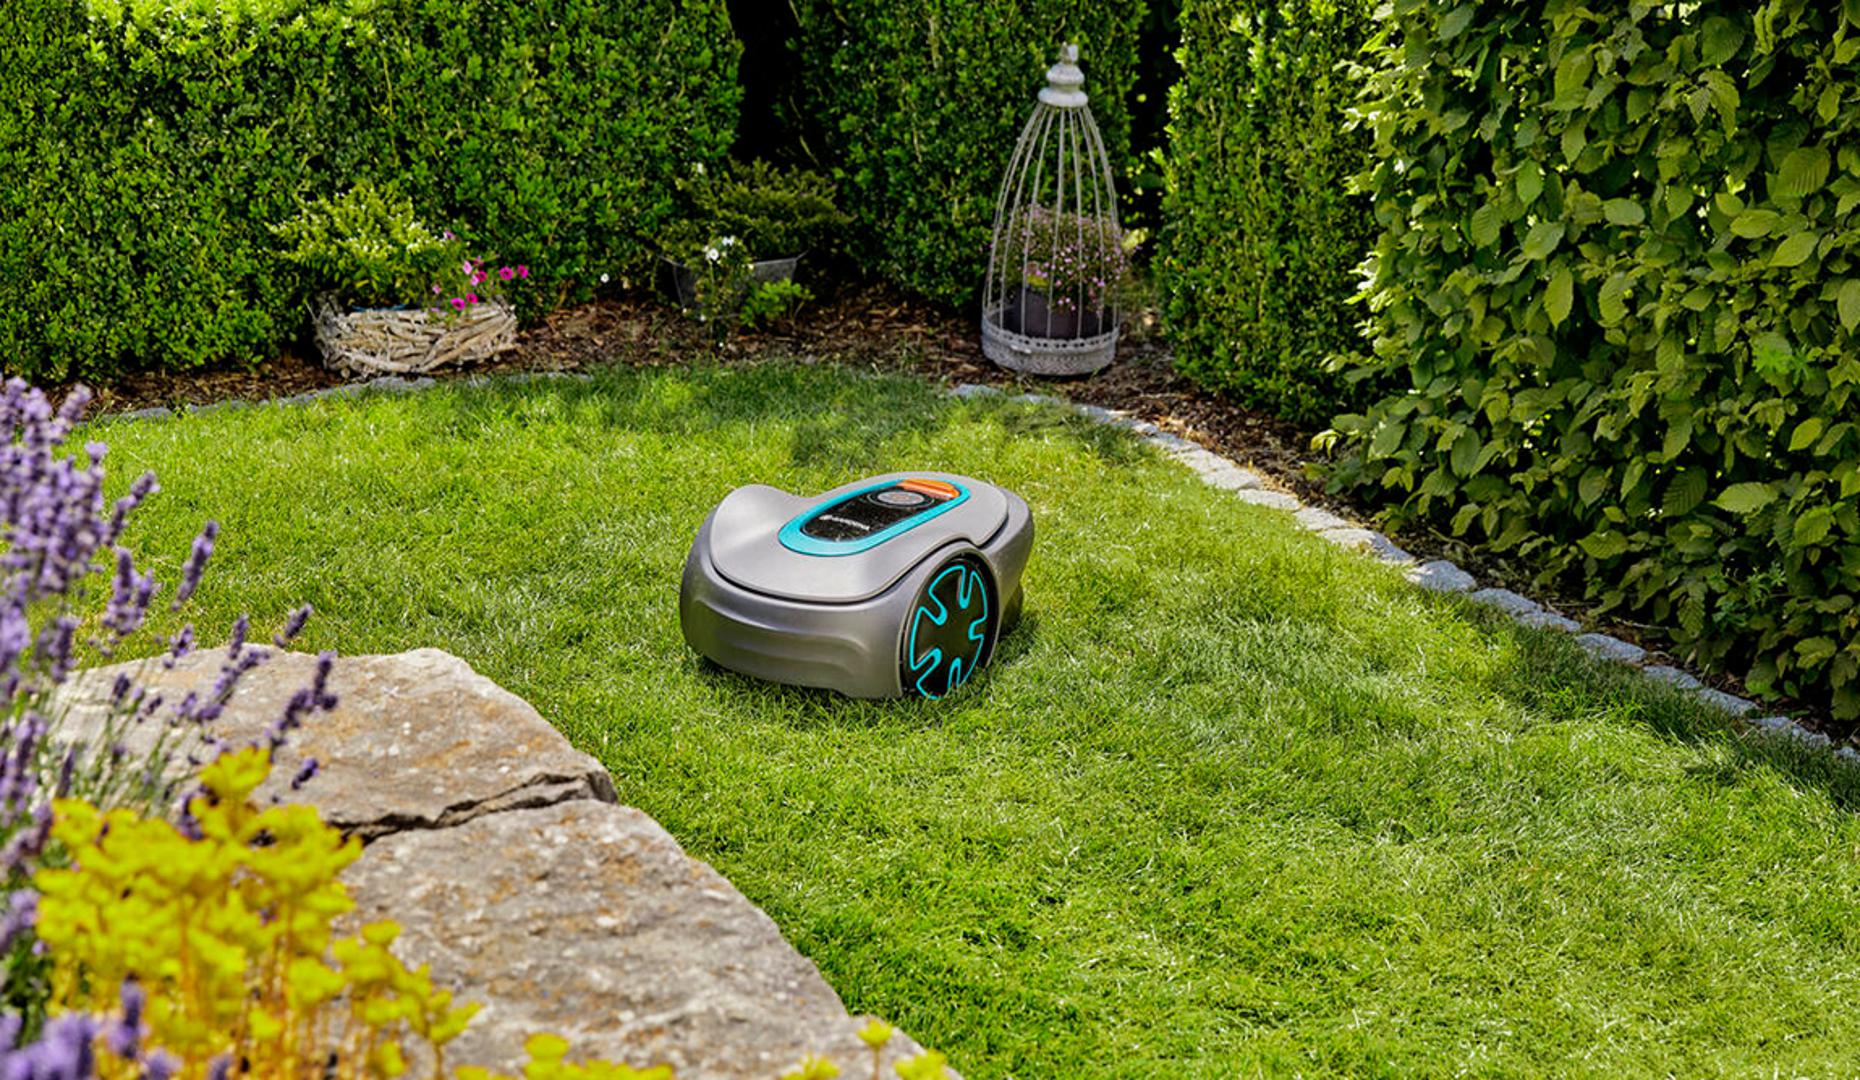 Robotska kosilica brine za uredan i pažljivo njegovani travnjak te vam omogućuje više vremena za druge zadatke